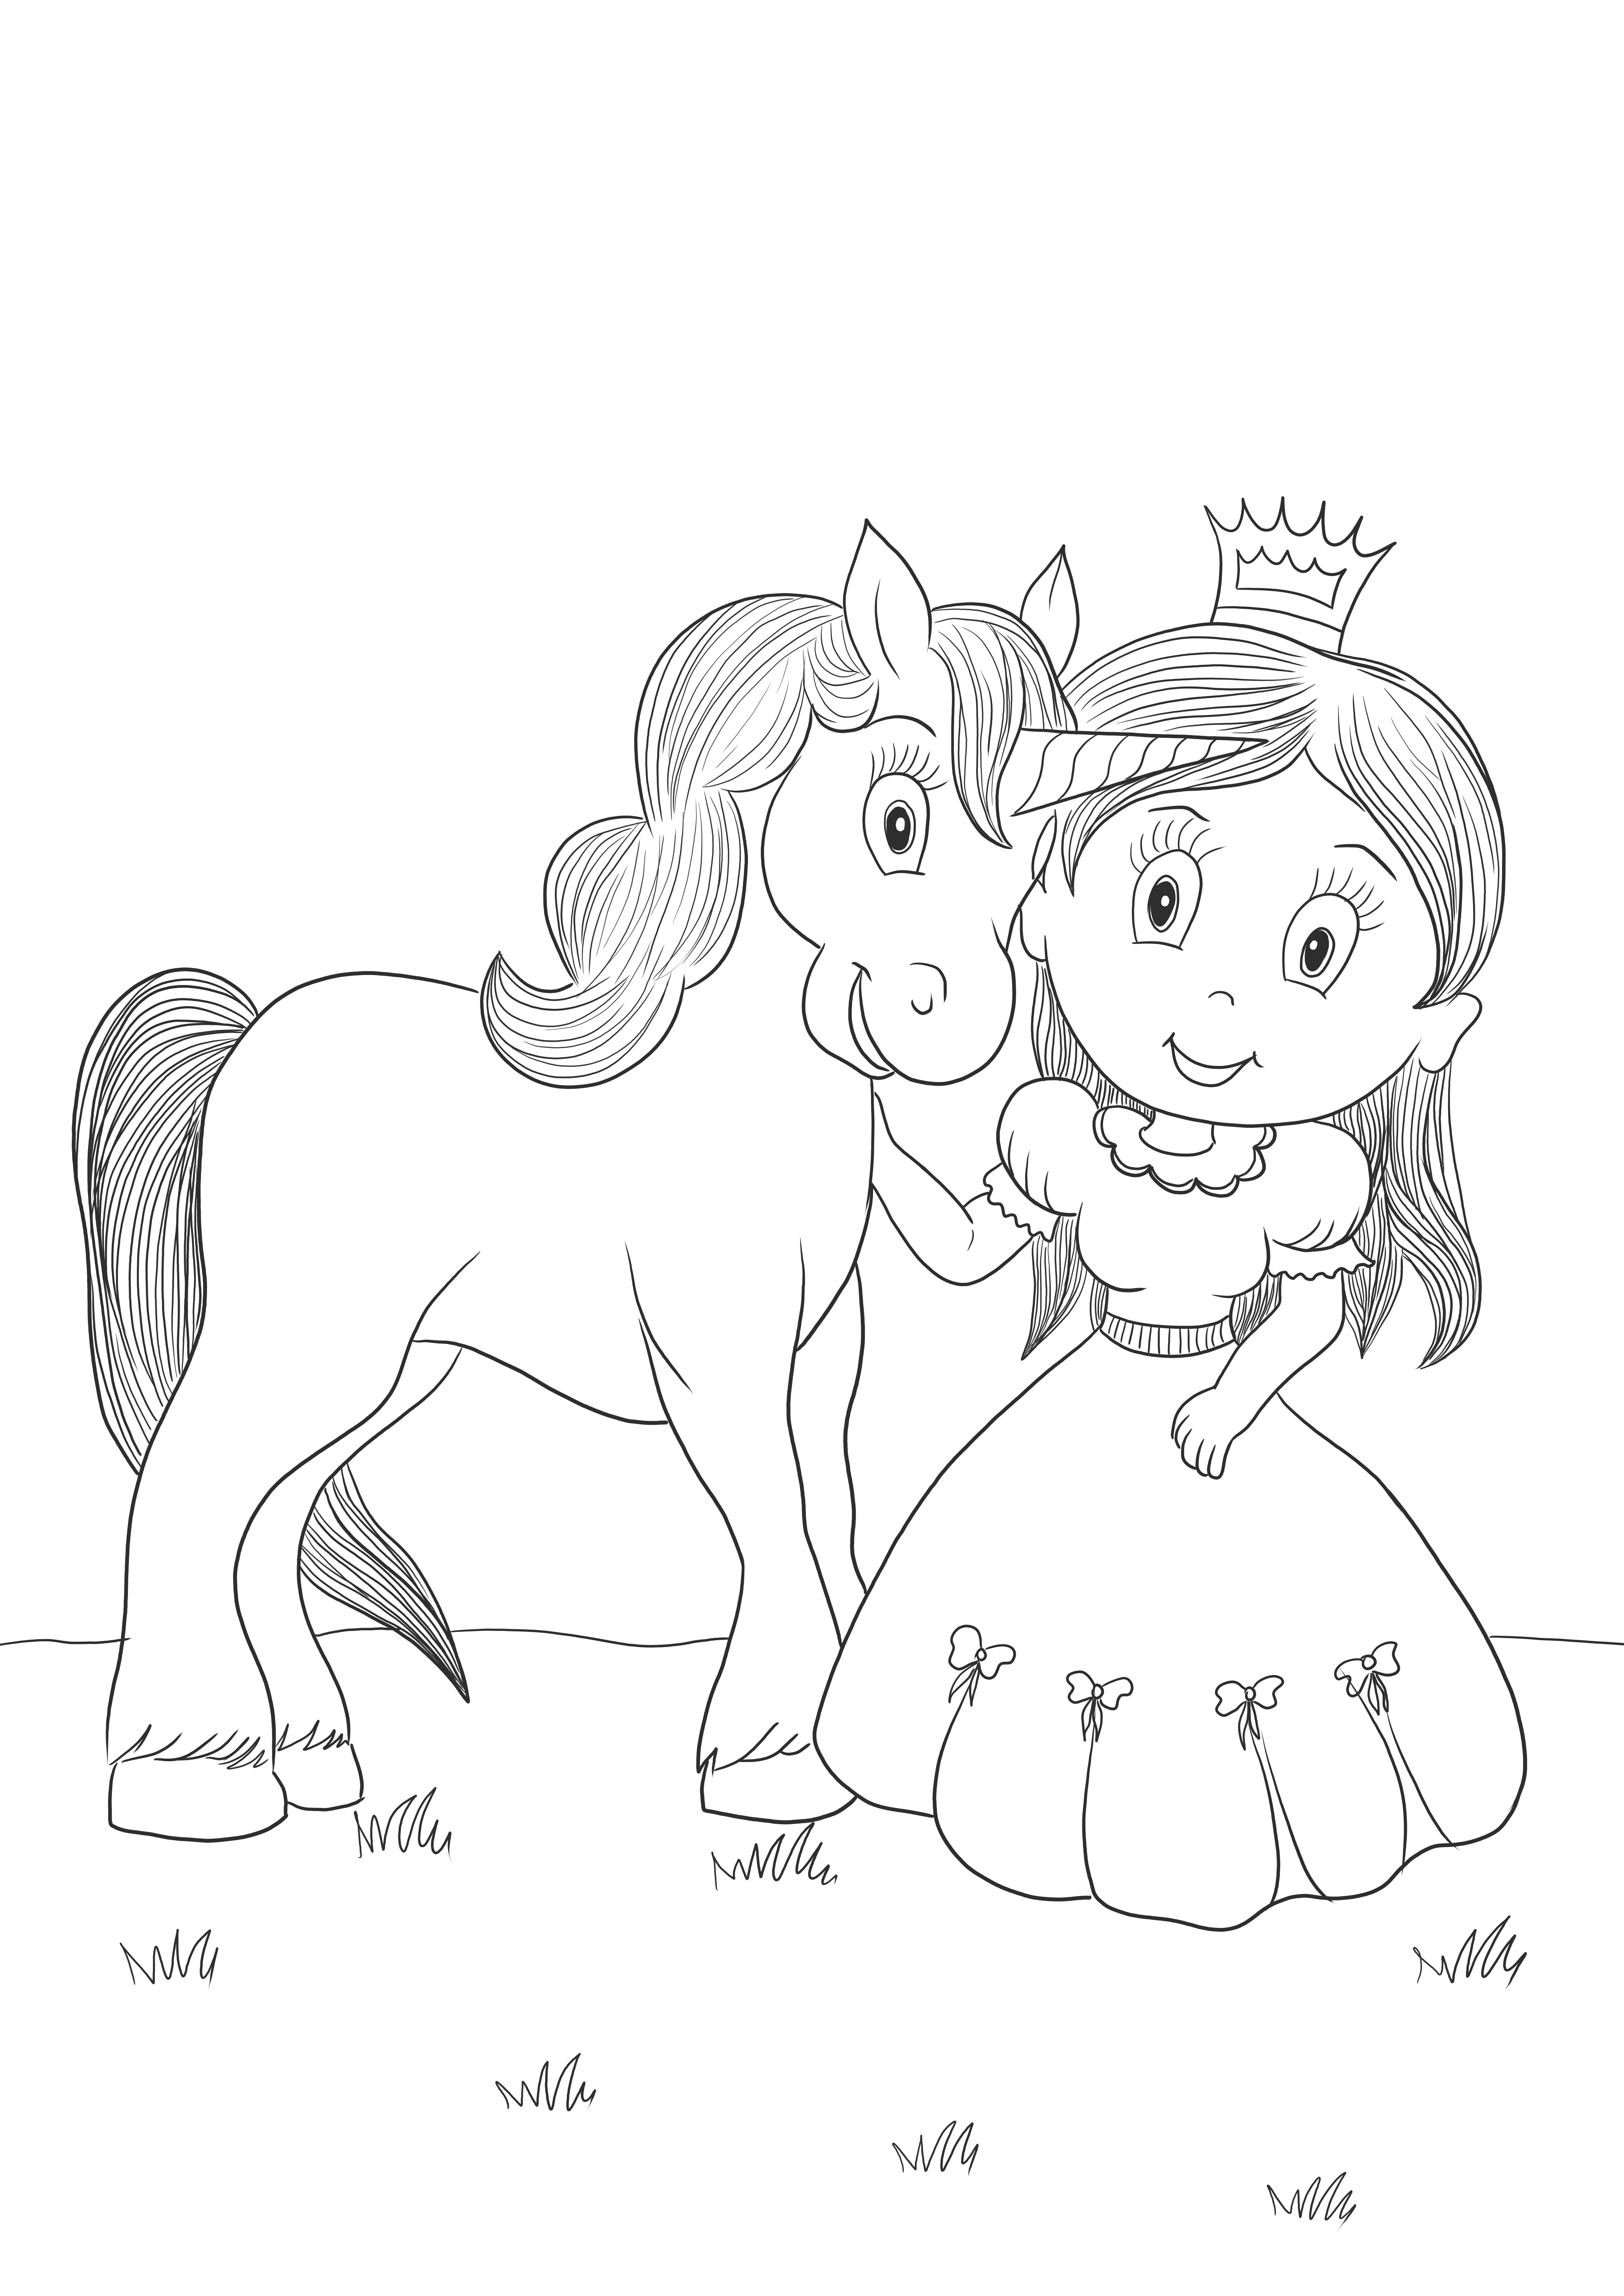 La Principessa Disney e il suo amico cavallo possono stampare e colorare l'immagine